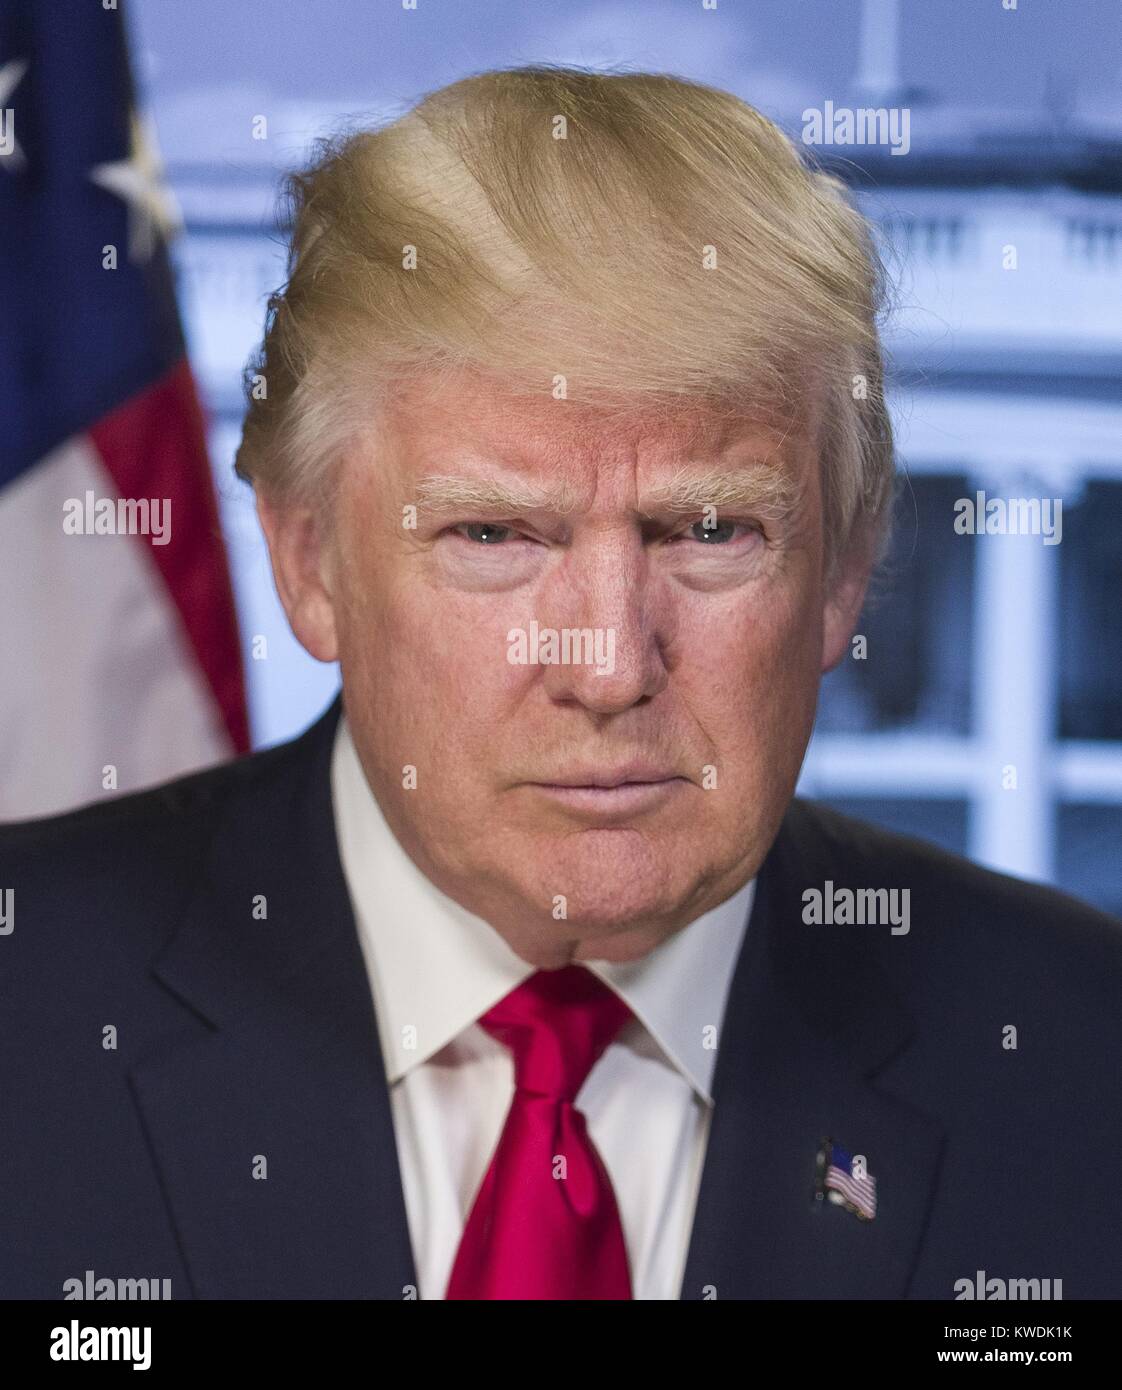 Presidente-eletto Donald Trump in un ritratto rilasciato dalla Casa Bianca il 20 gennaio 2017. Trump è c'erano pochi sorrisi, sporgente a poppa ed emozione sgradevole. La lunghezza focale corta di ammorbidimento provoca al di fuori del piano del viso, ma non vi è alcun evidente ritocco digitale. Il ritratto è stato probabilmente preso di fronte a una posizione neutra di schermo verde con la bandiera e la Casa Bianca aggiunto mediante manipolazione dell'immagine digitale (BSLOC 2017 18 152) Foto Stock